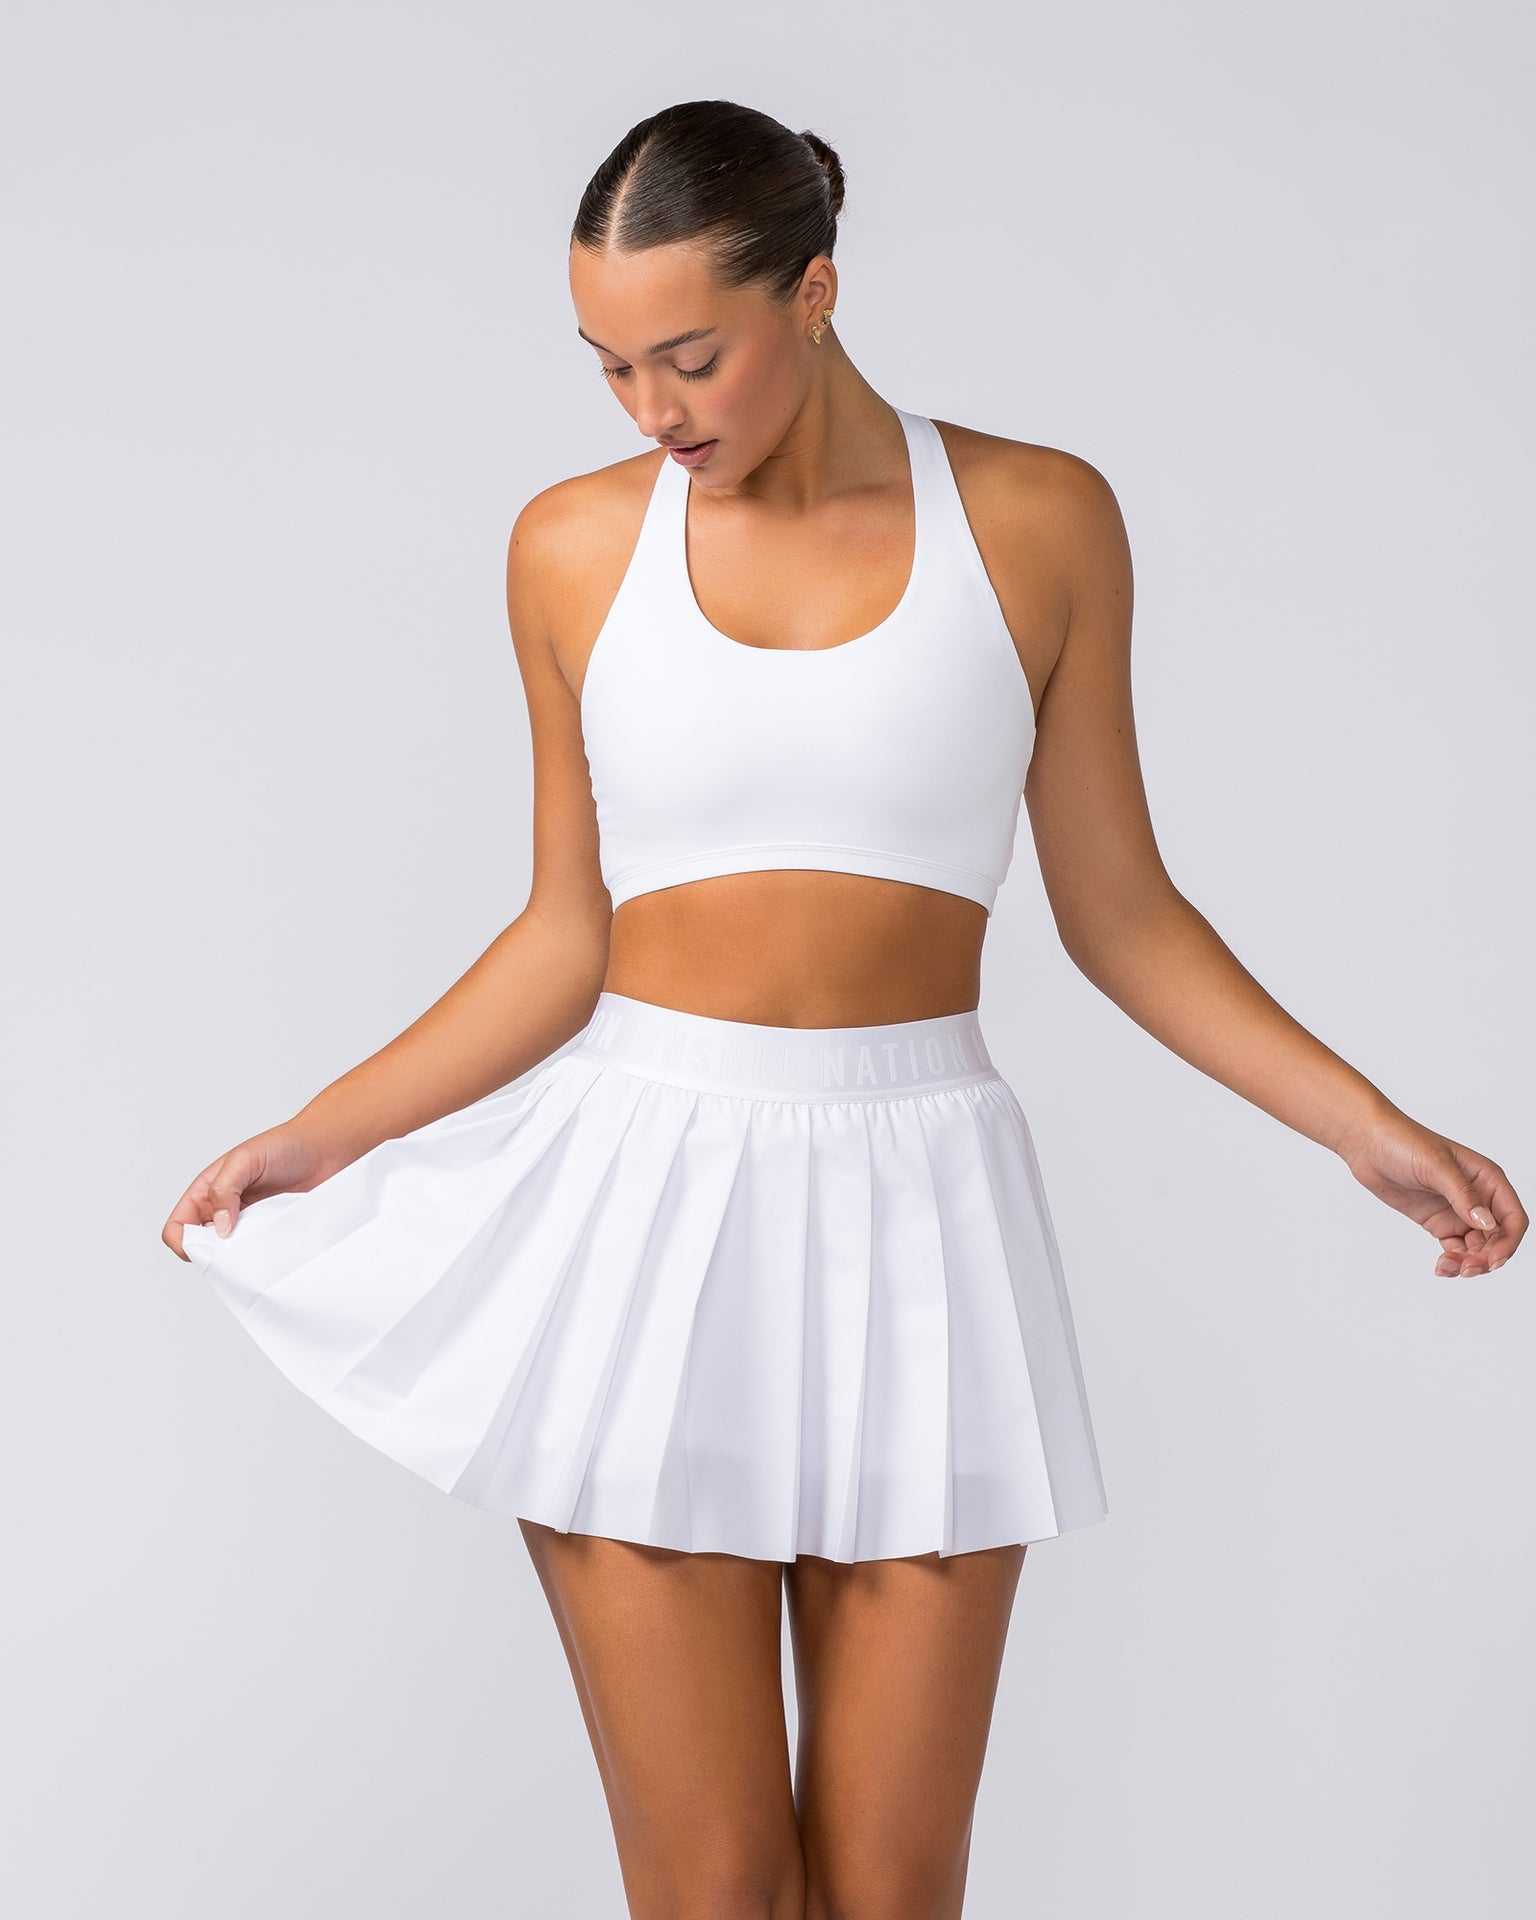 GC Women's Large Etonic White Athletic Skort Skirt W Built In Shorts  Pleated EUC